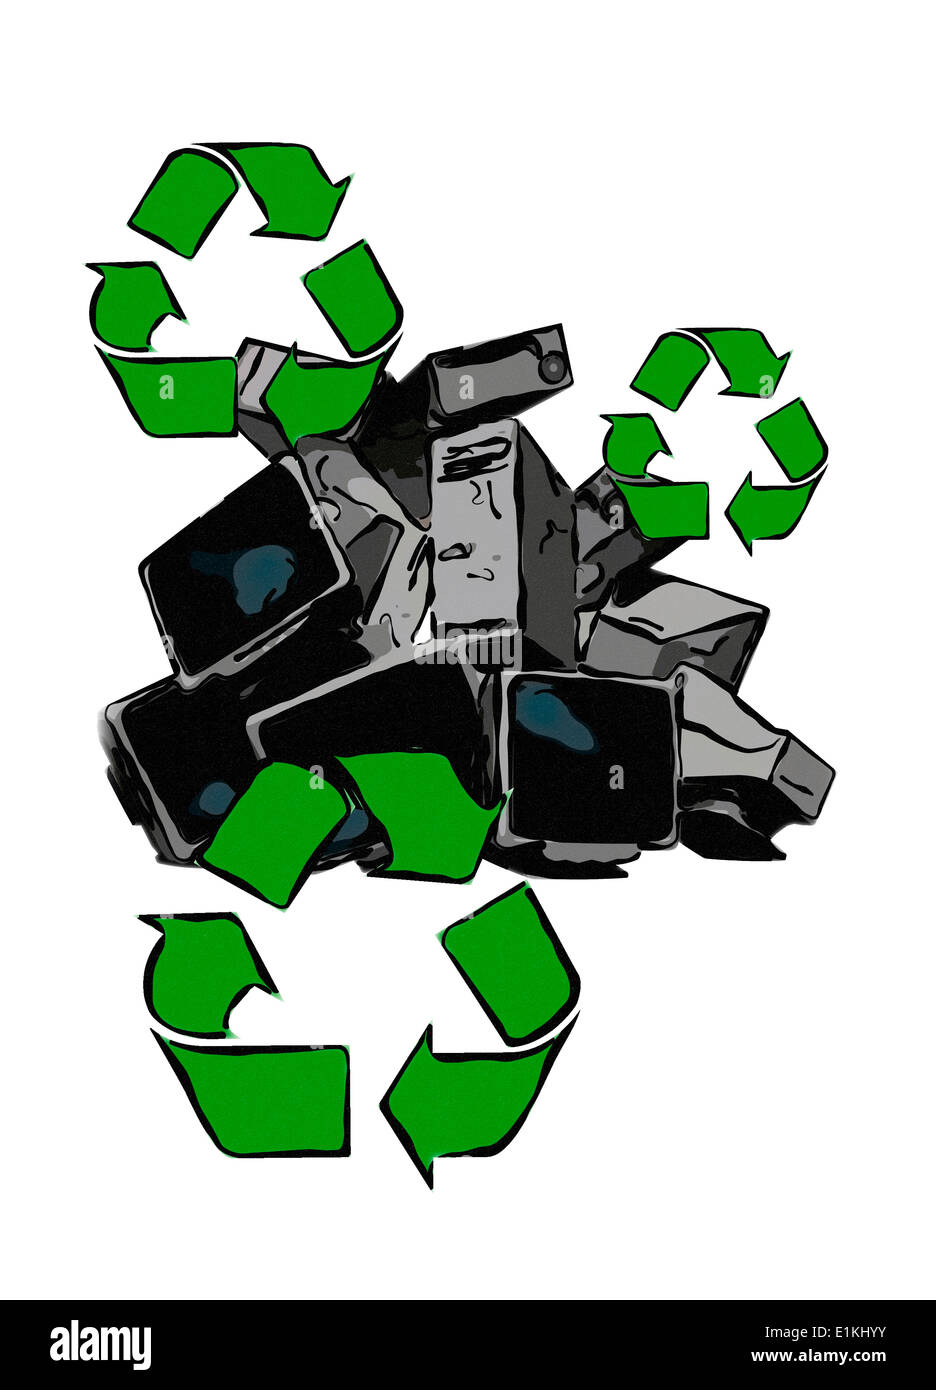 Illustrazione di computer in disuso concetto ambientale. Foto Stock